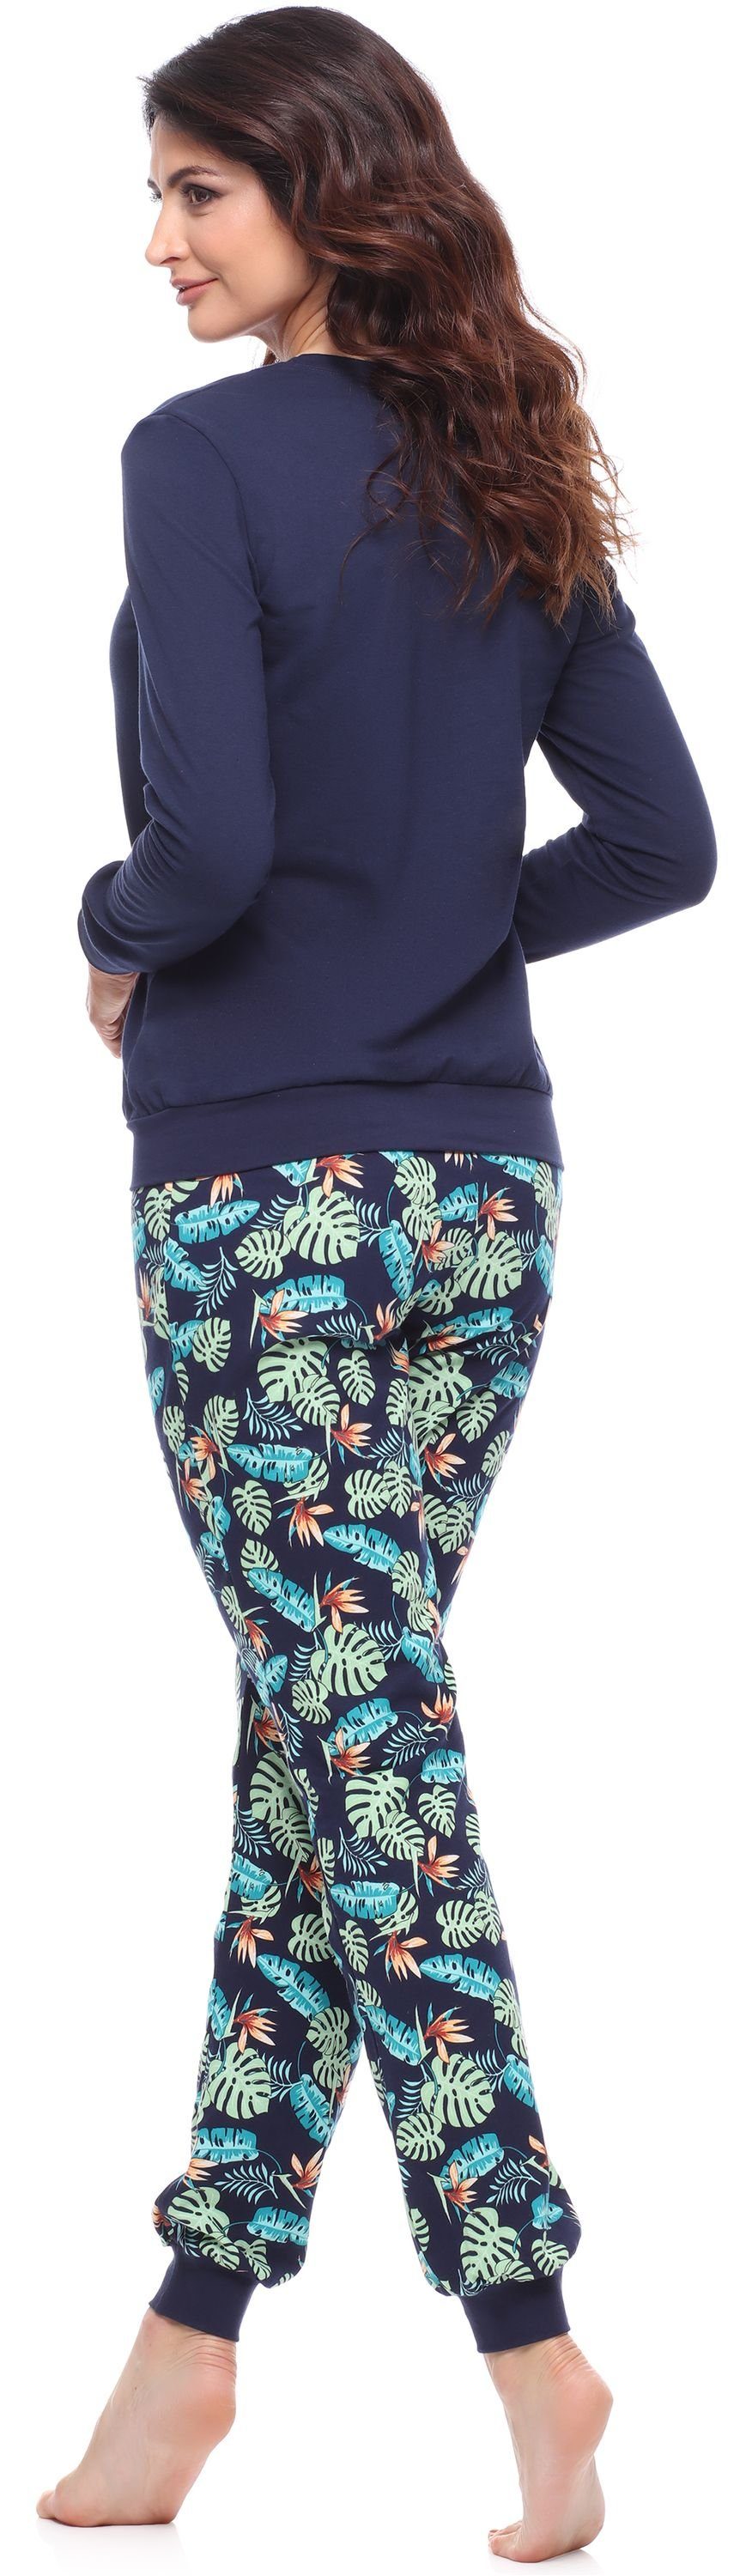 Merry Style Muster bunt Schlafanzug lang Damen MS10-268 mit Schlafanzug Marineblau/Blätter Zweiteiler Pyjama